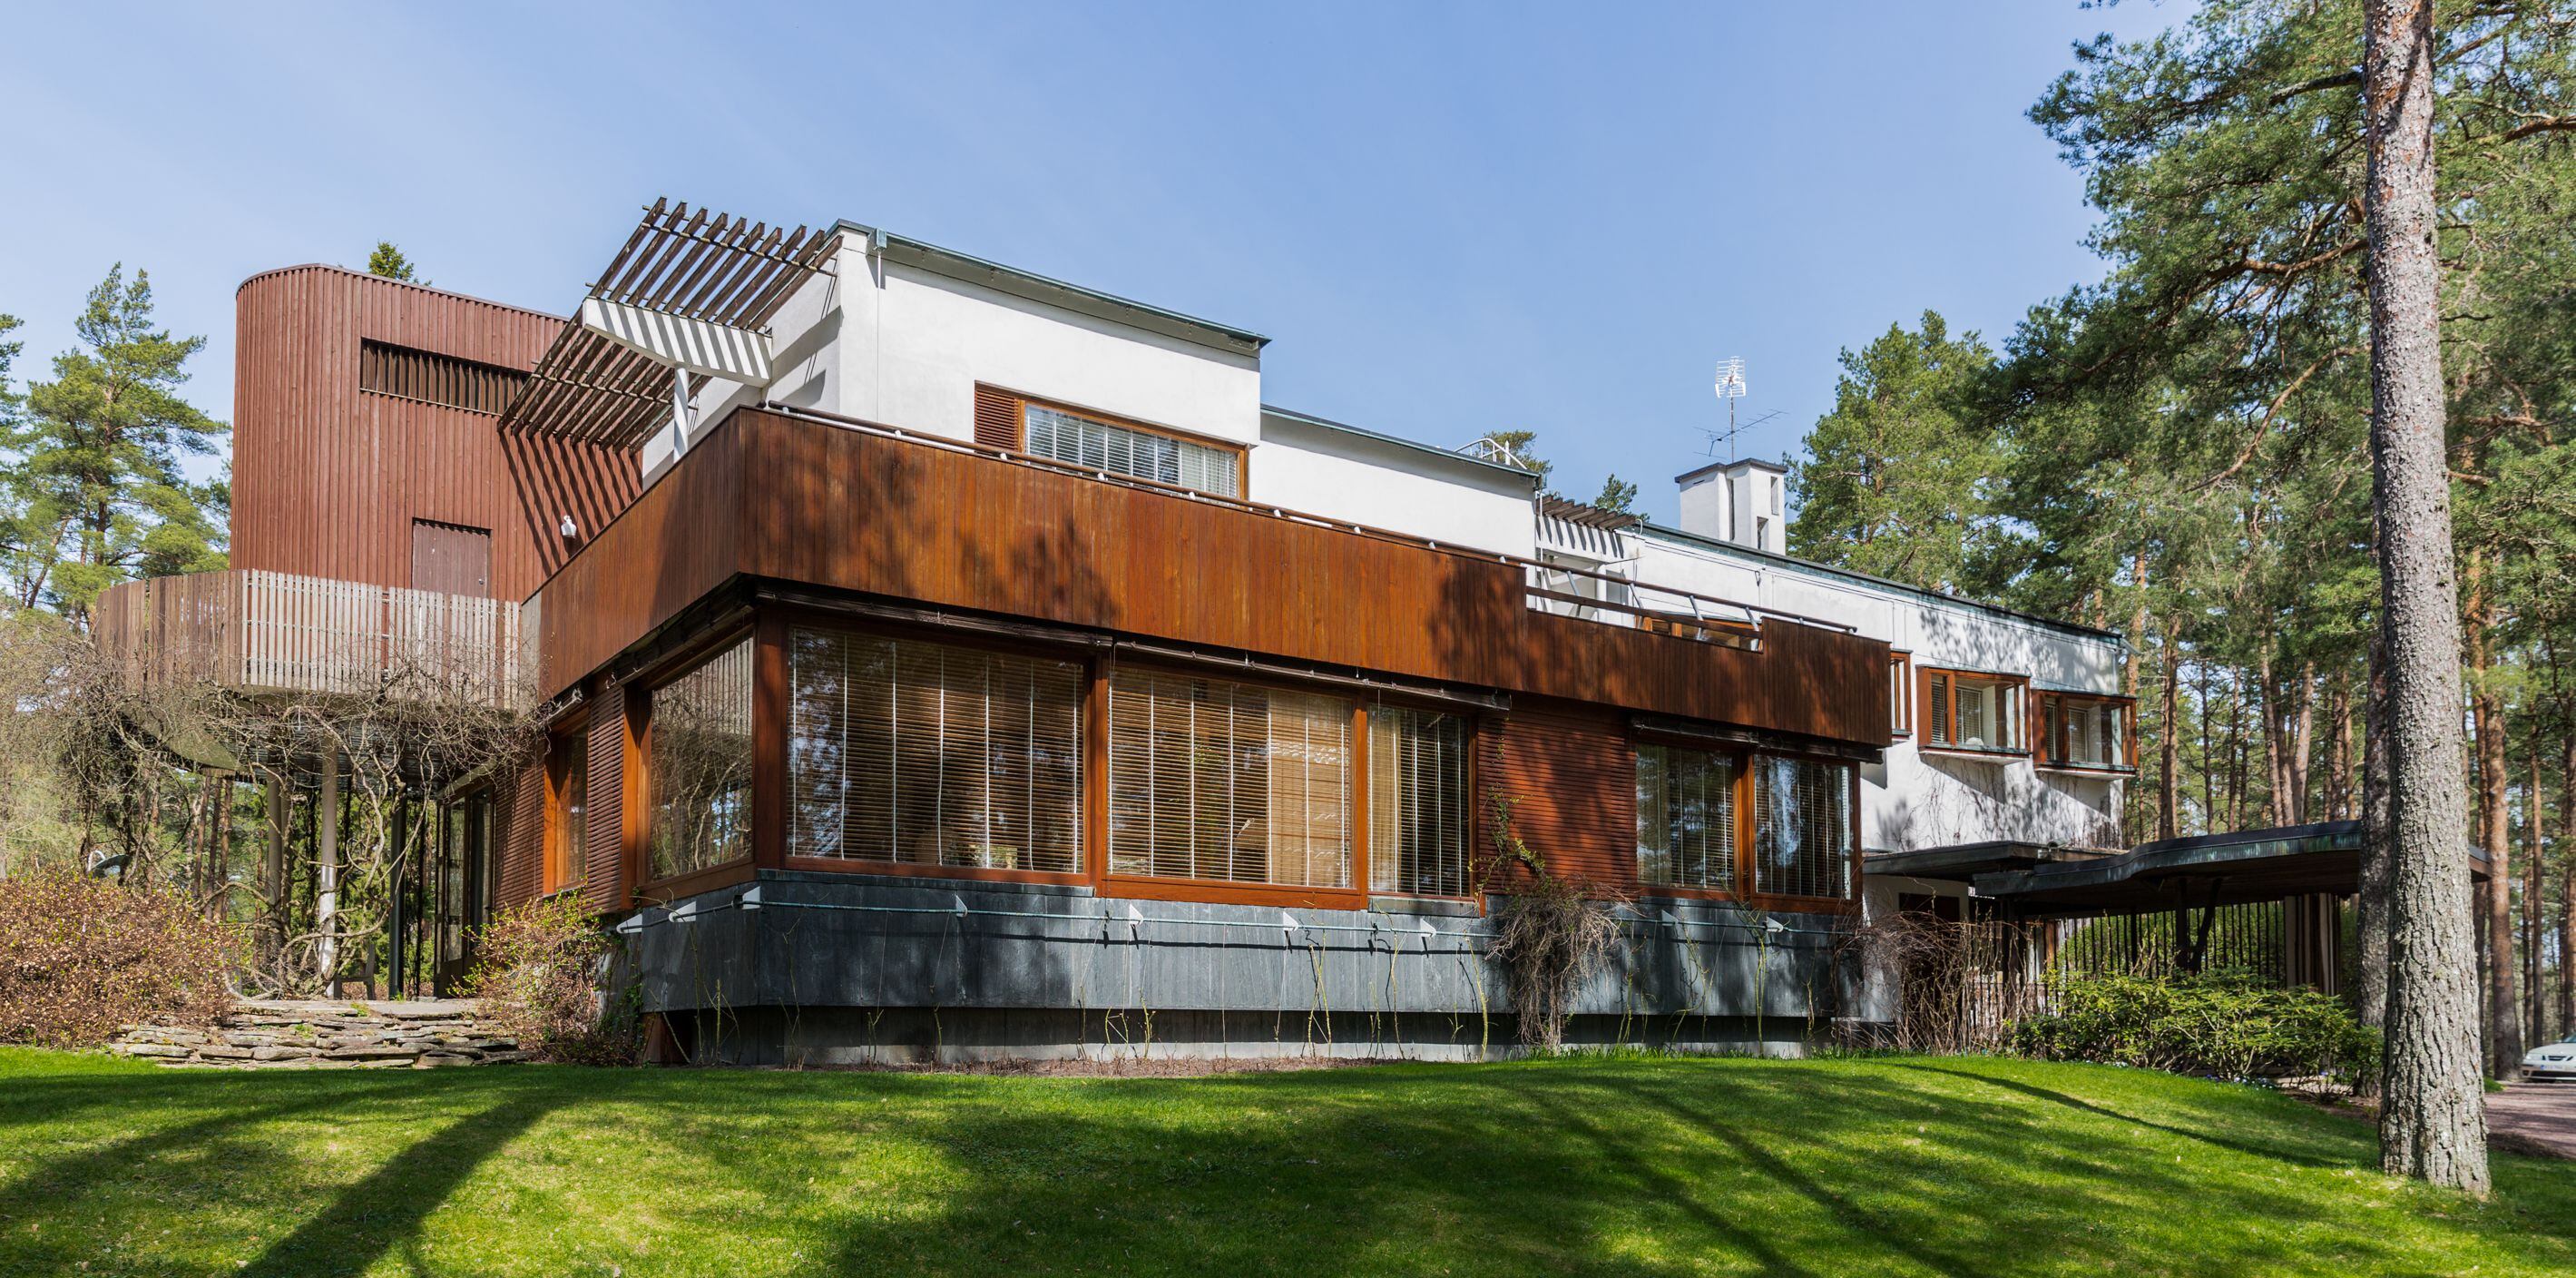 Villa Mairea, de Alvar y Aino Aalto.